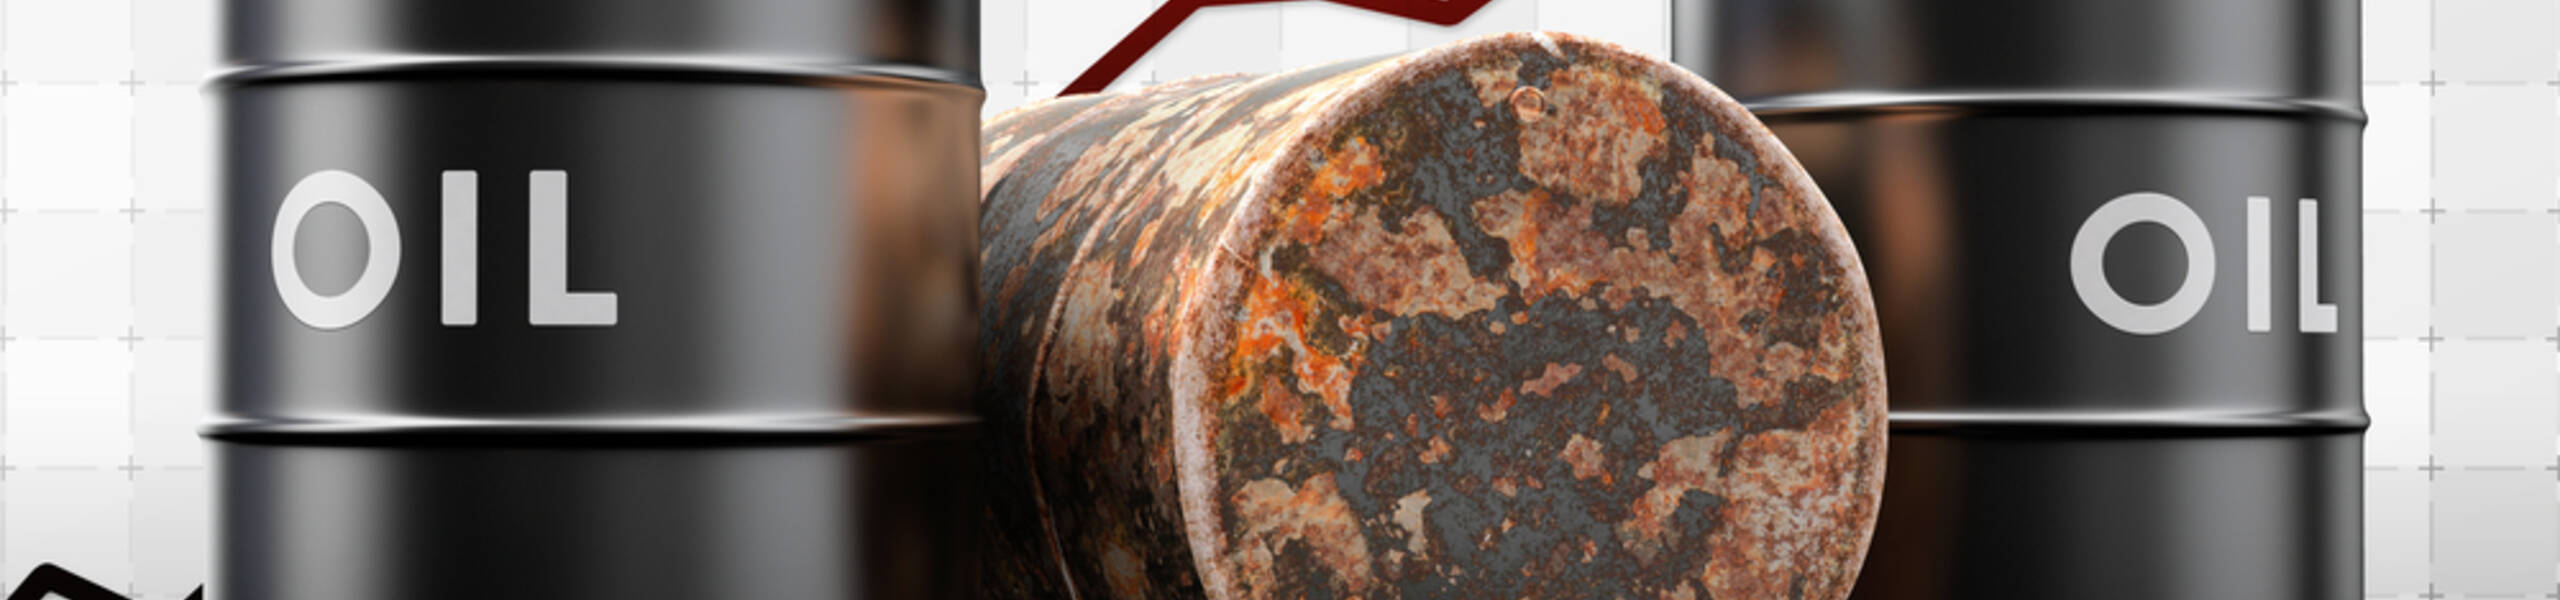 Petróleo: WTI permanece pressionado após perder tração em $ 61,35